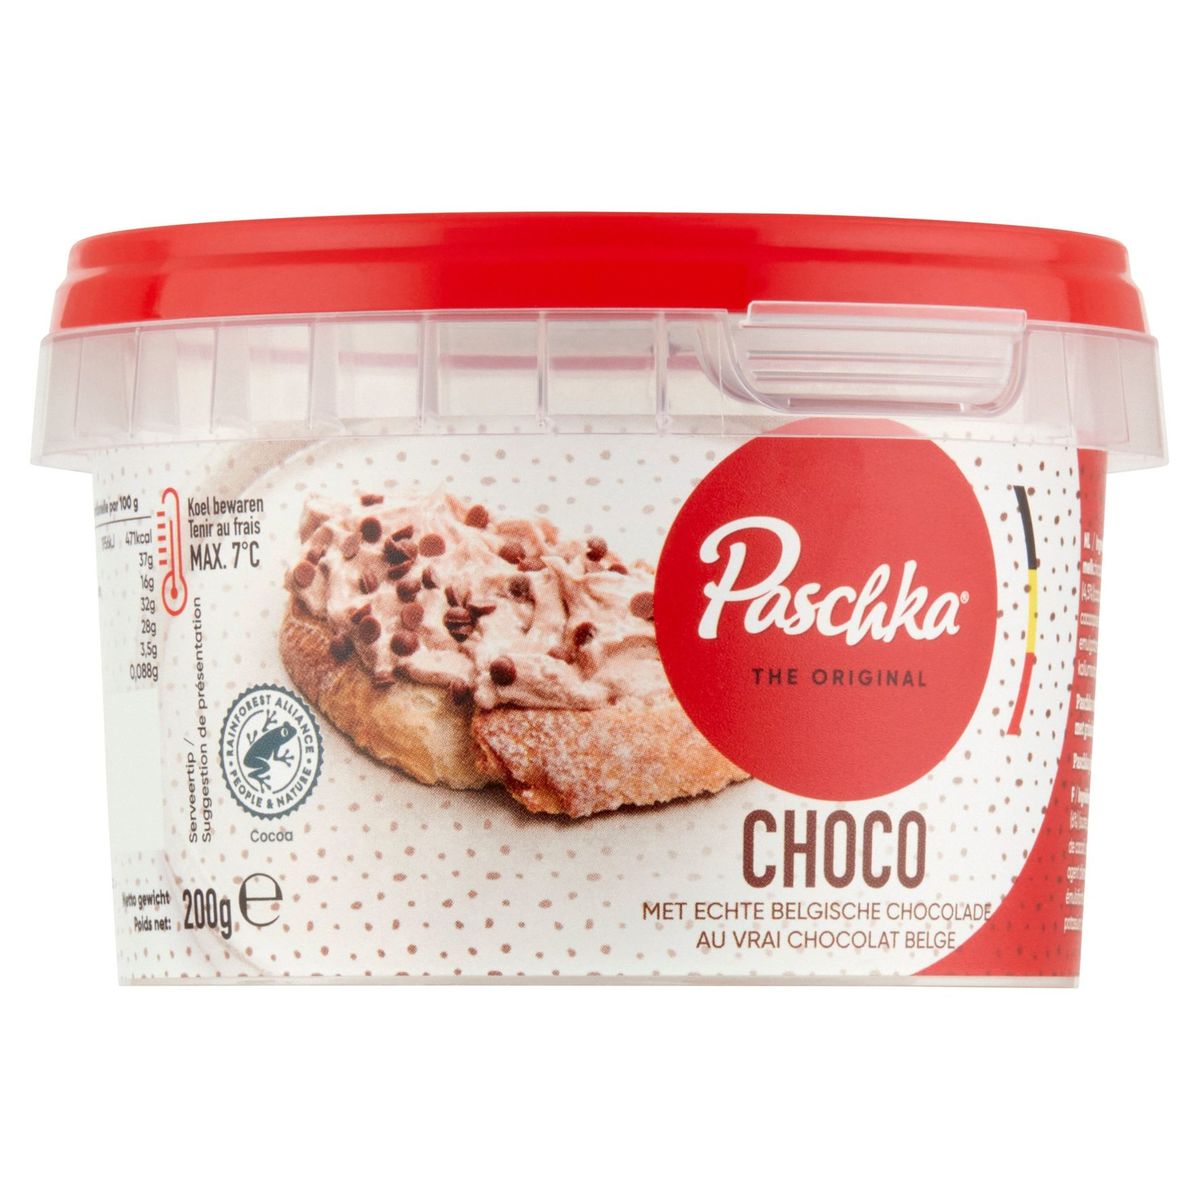 Paschka The Original Choco met Echte Belgische Chocolade 200 g